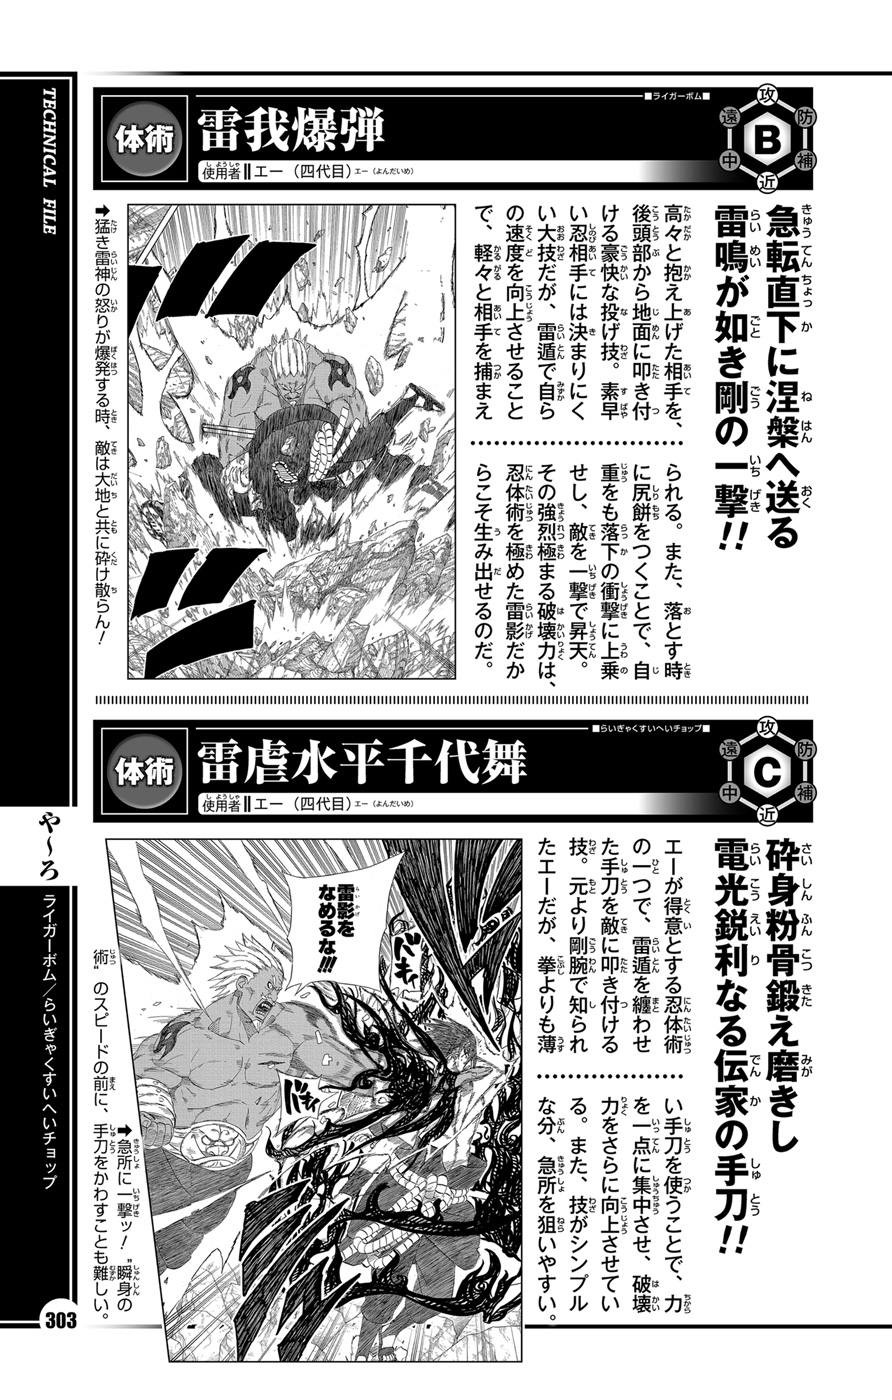 Tsunade Não é Mais Forte Que o Naruto MS (admita) - Página 5 Deewnh10